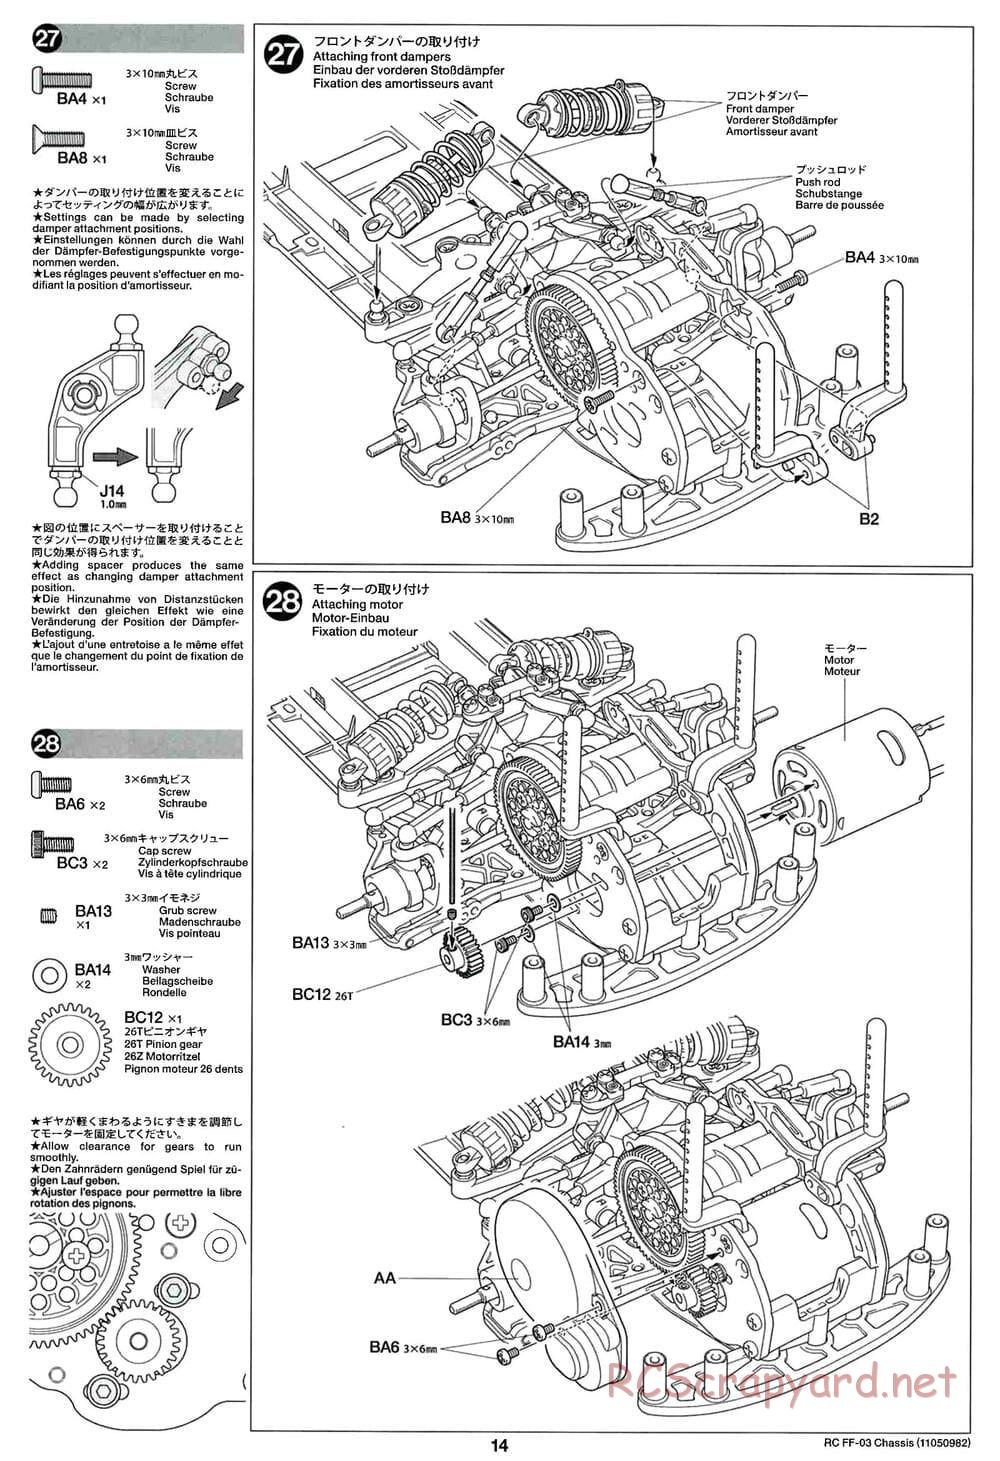 Tamiya - Honda Accord Aero Custom - FF-03 Chassis - Manual - Page 14